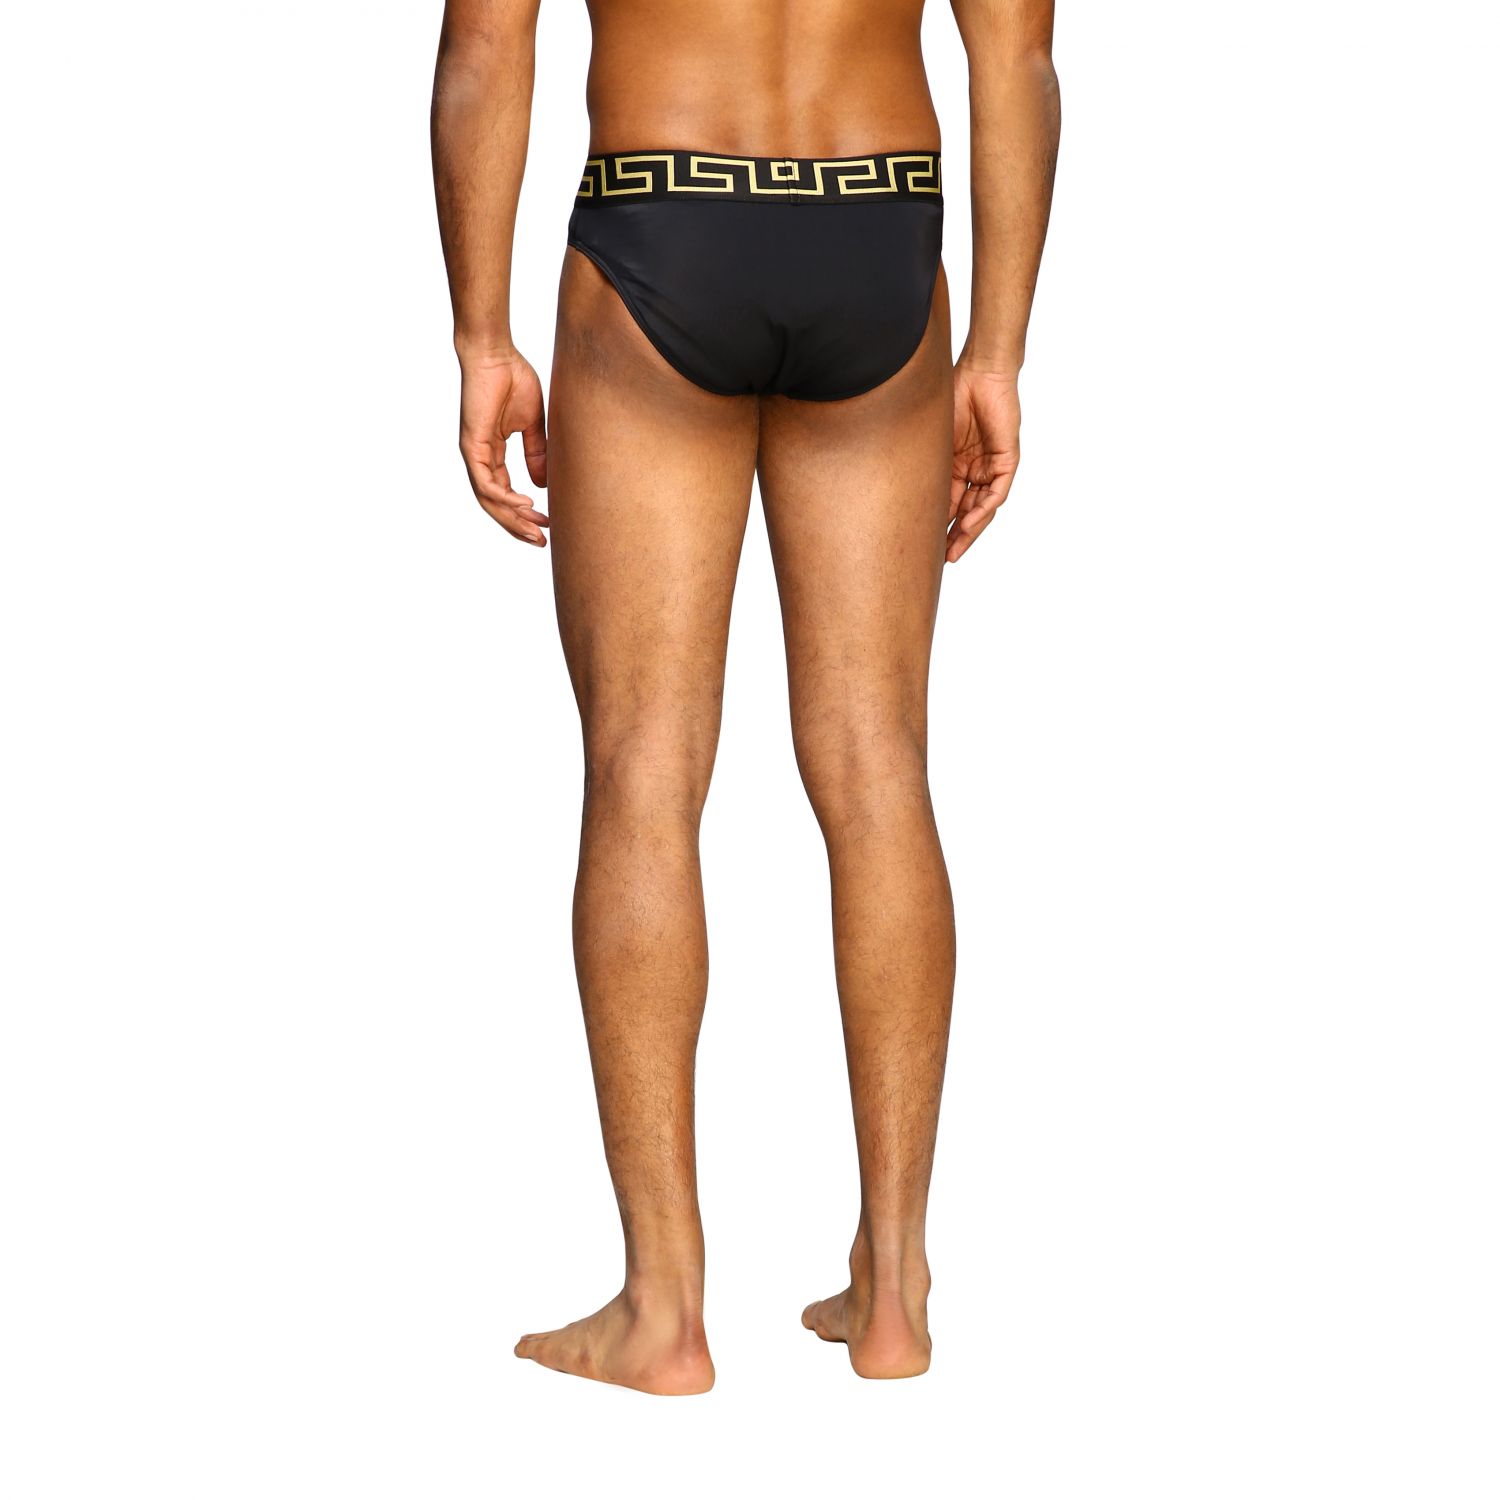 versace mens underwear uk